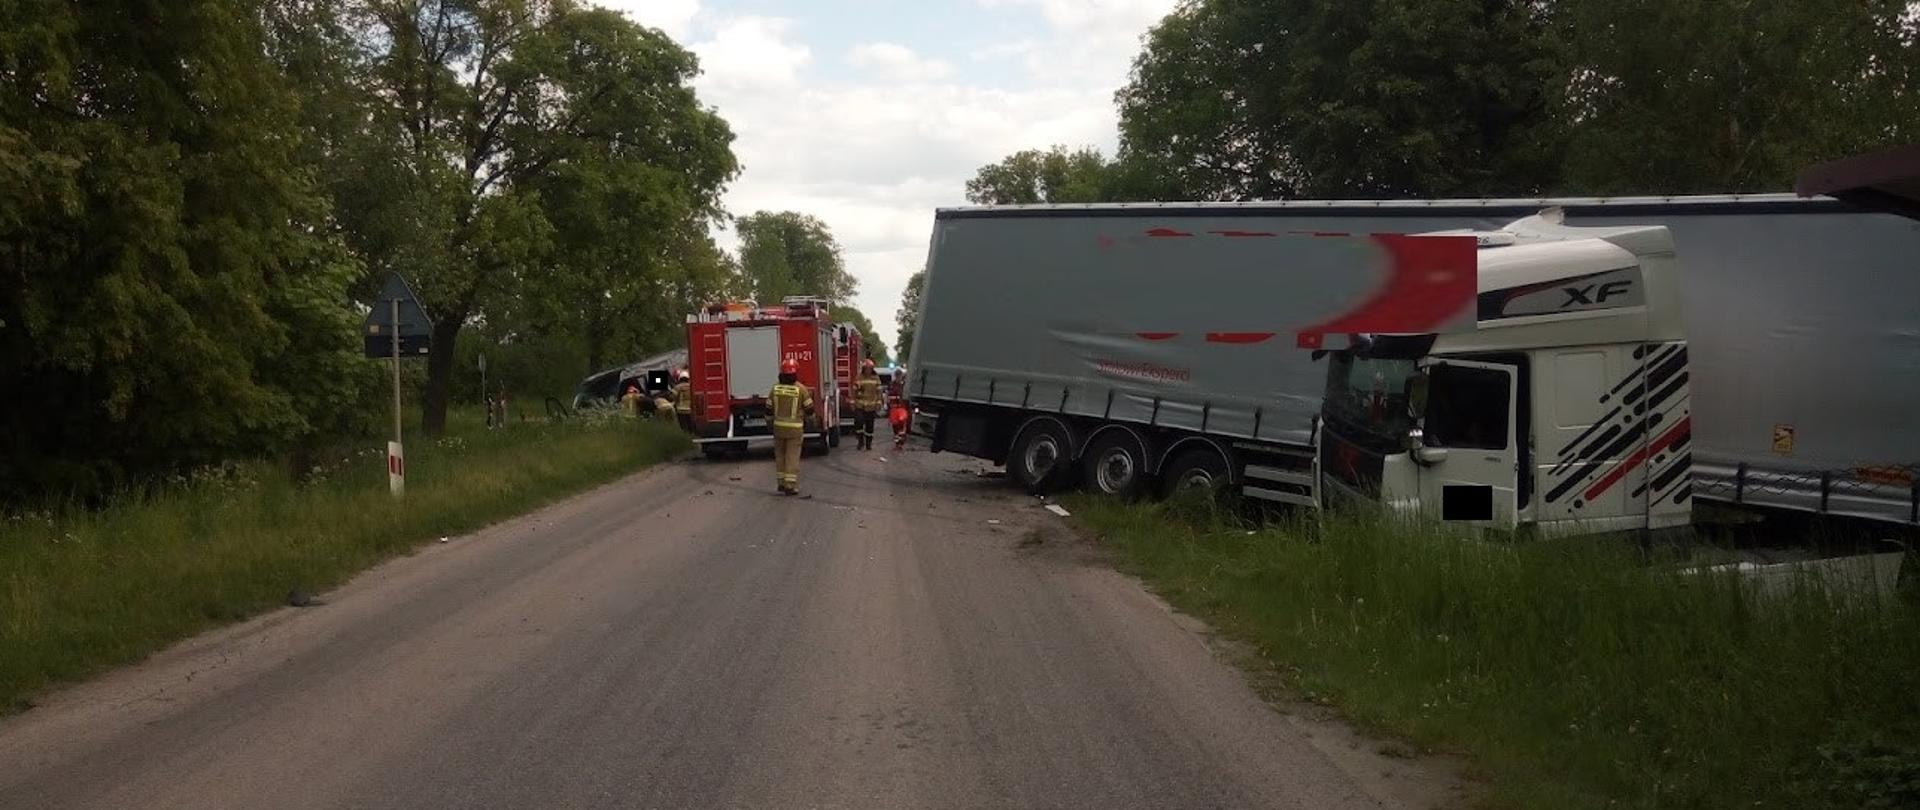 Zdjęcie przedstawia akcję ratowniczą wypadku drogowego na którym widać samochód ciężarowy w przydrożnym rowie 